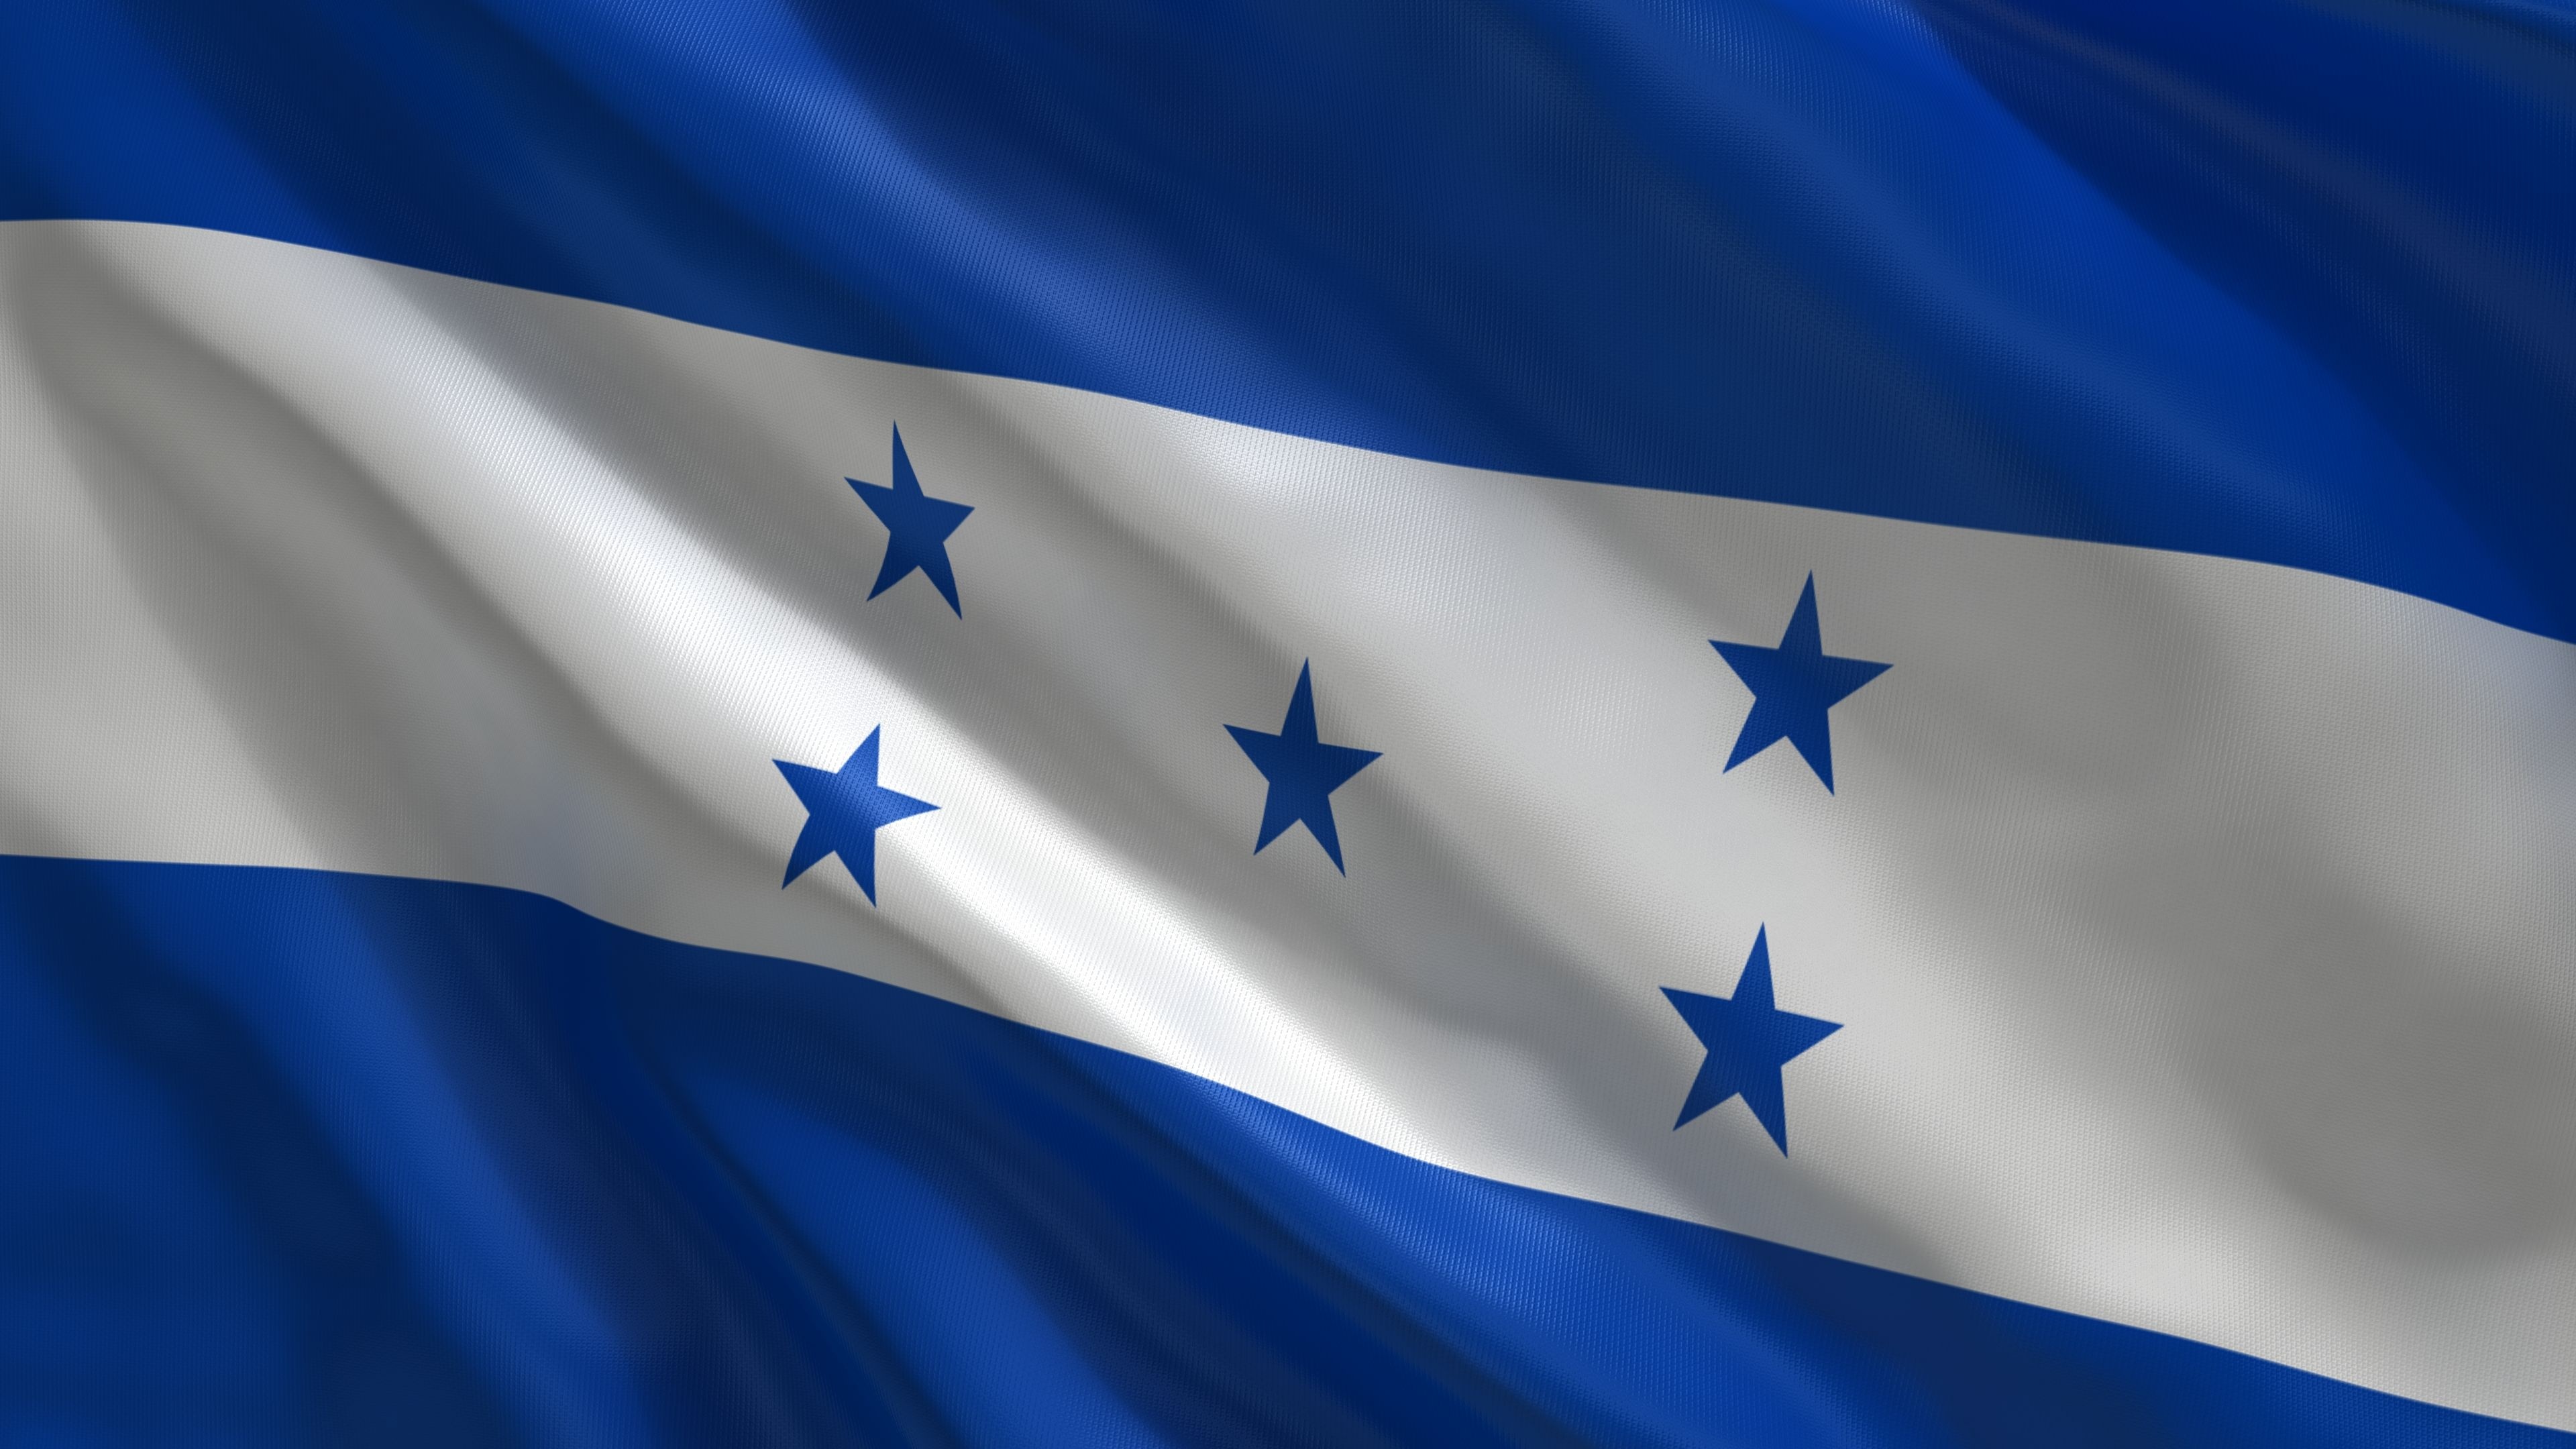 HD wallpaper, Bandera Honduras, 3840X2160 4K Desktop, National Flag Of Honduras, World Flags, Desktop 4K Roatan Background, Honduras Flag